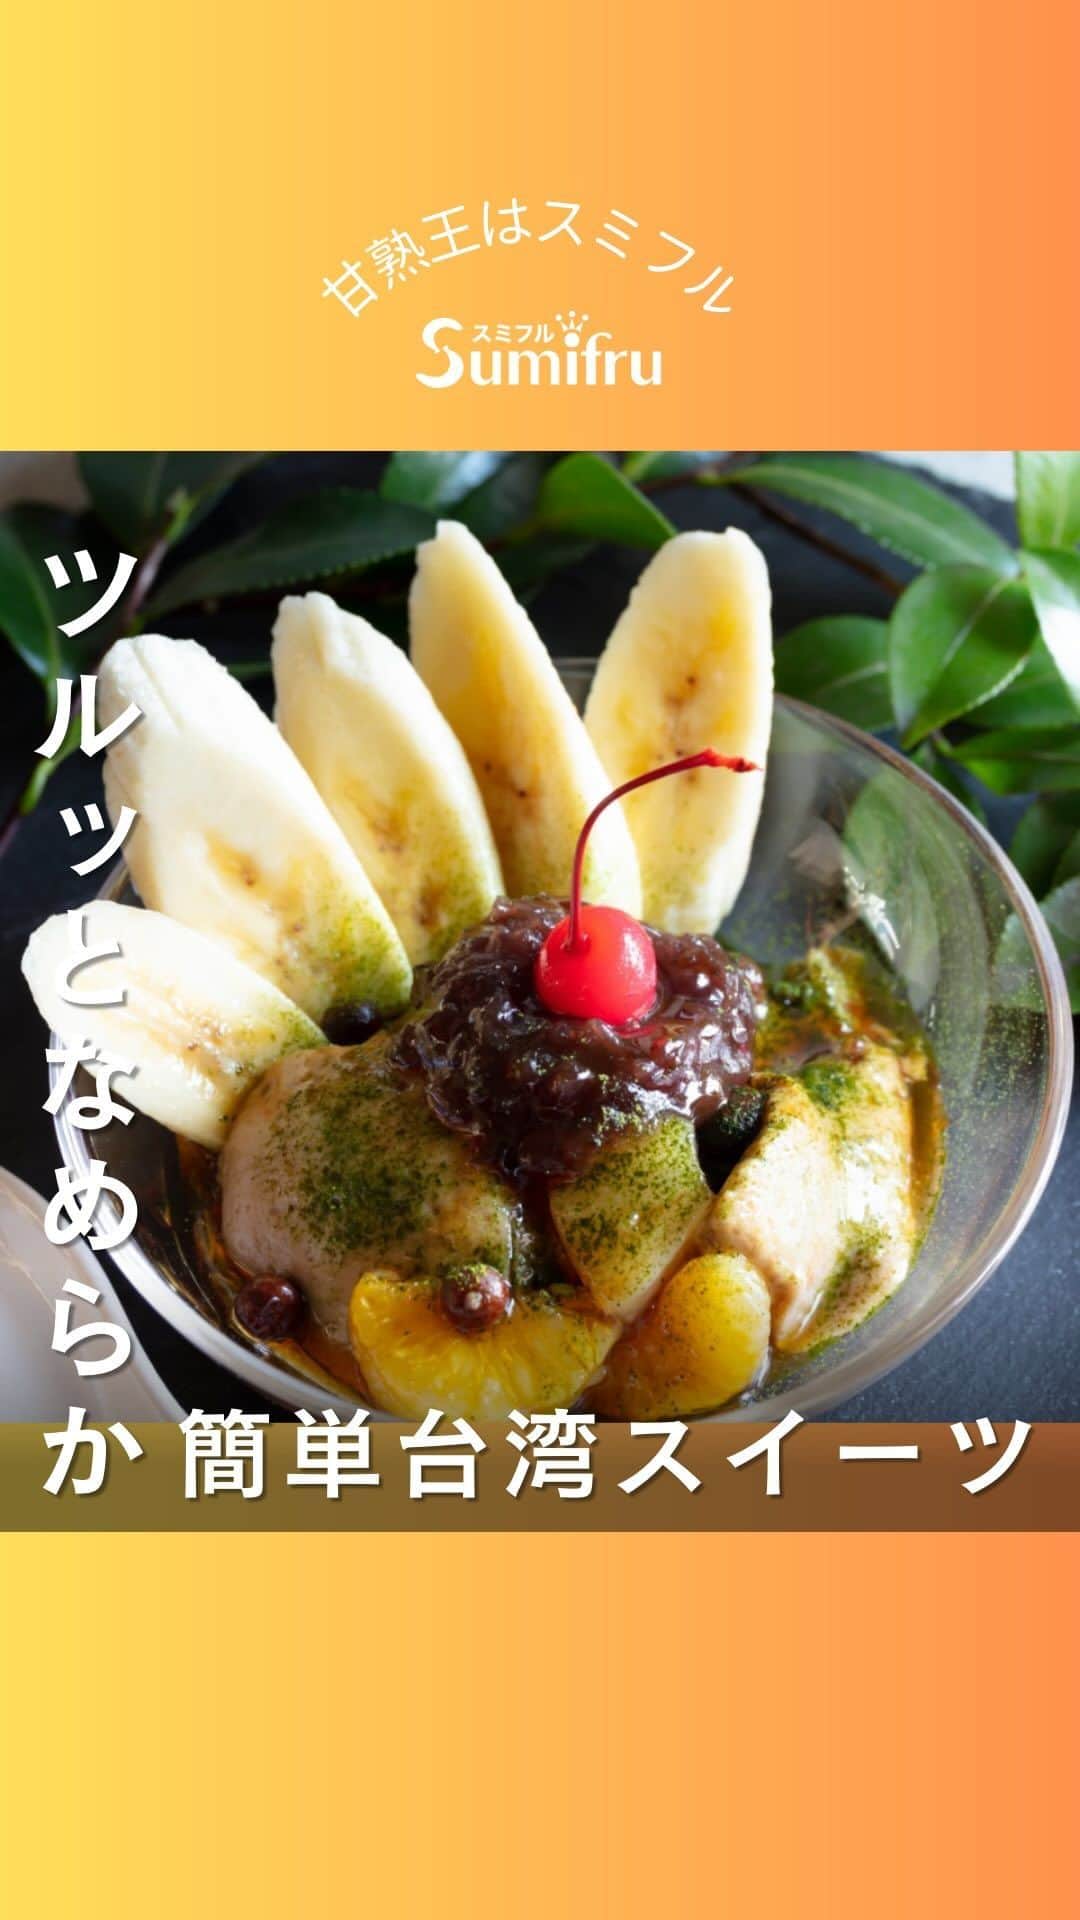 Sumifruのインスタグラム：「◁◁本日ご紹介するレシピはこちら▷▷10分で作れる♪【あんみつ風バナナ豆花🍌】  ヘルシーでさっぱりと食べられる、あんみつ風デザートはいかがですか？ 日本でも専門店が増えつつある、台湾の人気スイーツ「豆花（トウファ）」をバナナ味にアレンジしました♪  スイーツとしてはもちろん、疲れて食欲がない日や、胃の調子が悪い日になどにも活用したいレシピです😊  ご自宅で簡単に本格台湾スイーツを楽しめちゃいますよ🌟 いつものスイーツに飽きてきたら作ってみてはいかがでしょうか？  ⏰調理時間　１０min + 冷却時間 ※レシピは画像をスライドしてご覧いただけます  👀☝️ワンポイント☝👀 甘熟王は甘味が強いバナナなので、お砂糖が少なめでも美味しく仕上がります👑 シュガースポット（黒い斑点）の出ている完熟バナナは特に余っみが強くなっているのでオススメ◎ 熟成が進んだ完熟バナナの救済レシピとしても活用できます🌟  当アカウントでは、バナナやアボカドのアレンジレシピはもちろん、 バナナの豆知識や便利な情報を発信しています💡 バナナをはじめとするフルーツを、もっと好きになる。 そんなきっかけとなるアカウントを目指しています🌱 ぜひフォローやコメント、シェアなどで応援していただけたら嬉しいです。  最後までご覧いただき、ありがとうございました！  #バナナ #バナナレシピ #あんみつ #豆花 #あずき #スイーツ #体にやさしい #おやつタイム #簡単レシピ #ヘルシー #救済レシピ #腸活 #大人のおやつ #甘熟王ゴールドプレミアム #甘熟王 #スミフル」